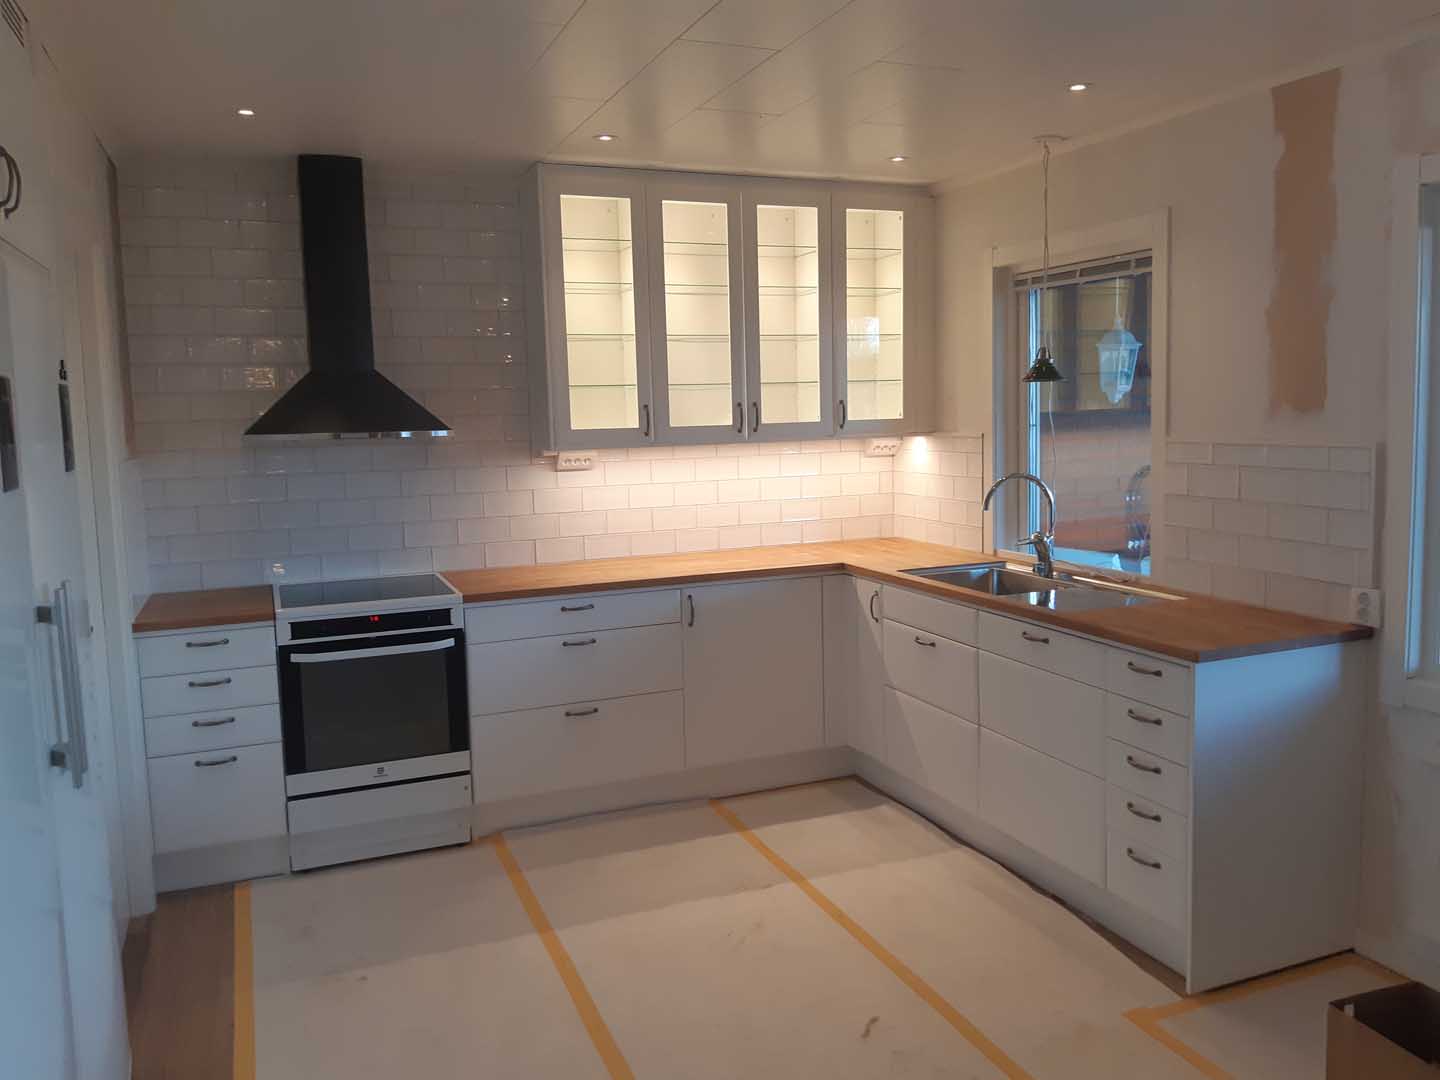 Köksrenovering utförd av Jockes bygg & snickarservice - ett byggföretag i Borlänge och Falun